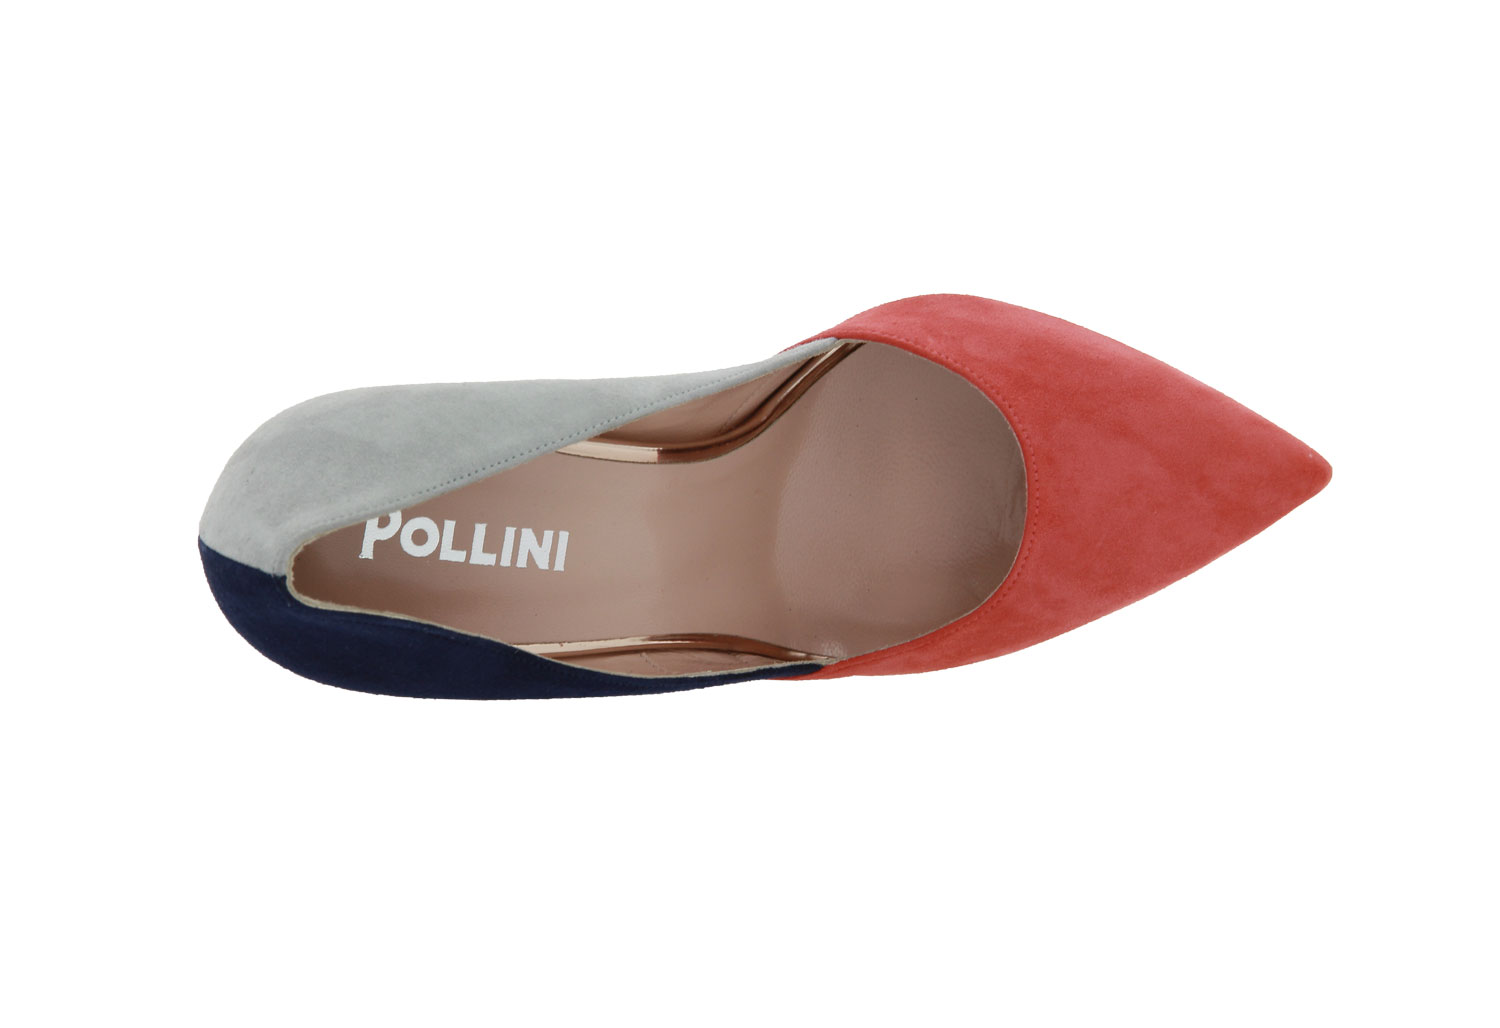 pollini-2249-00173-4